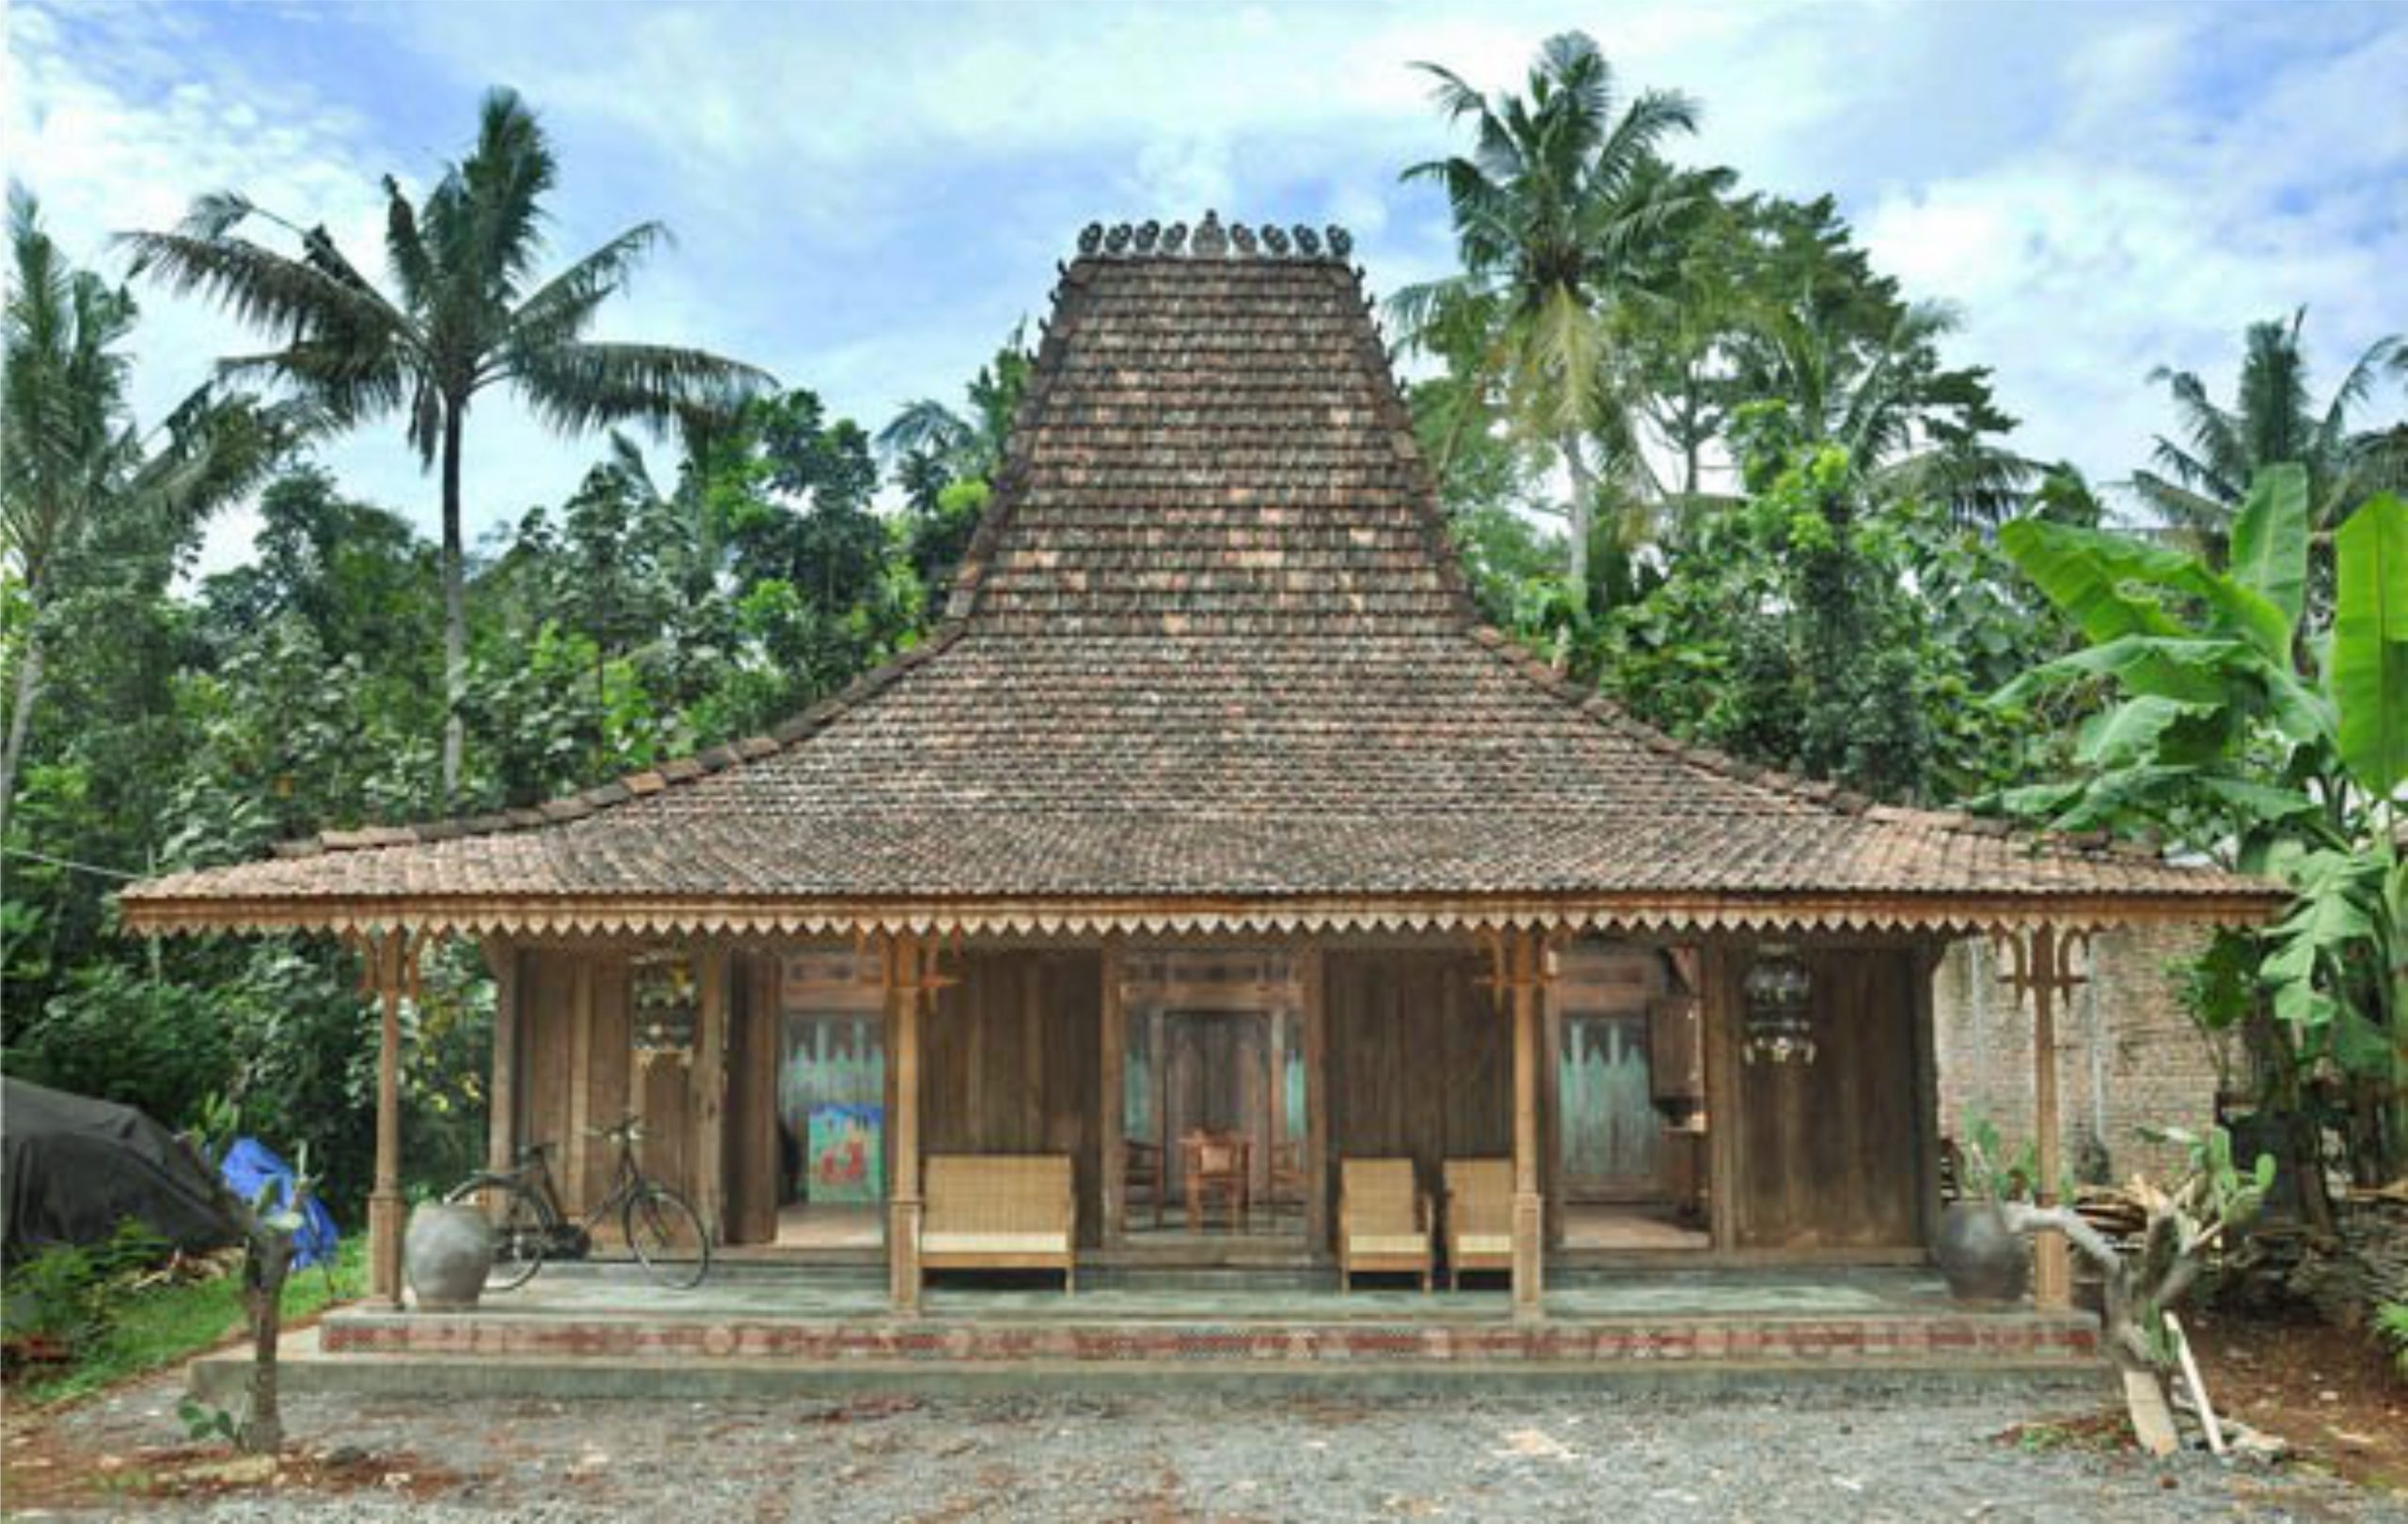 Rumah Adat Jawa Tengah (Joglo) - Pewarta Nusantara